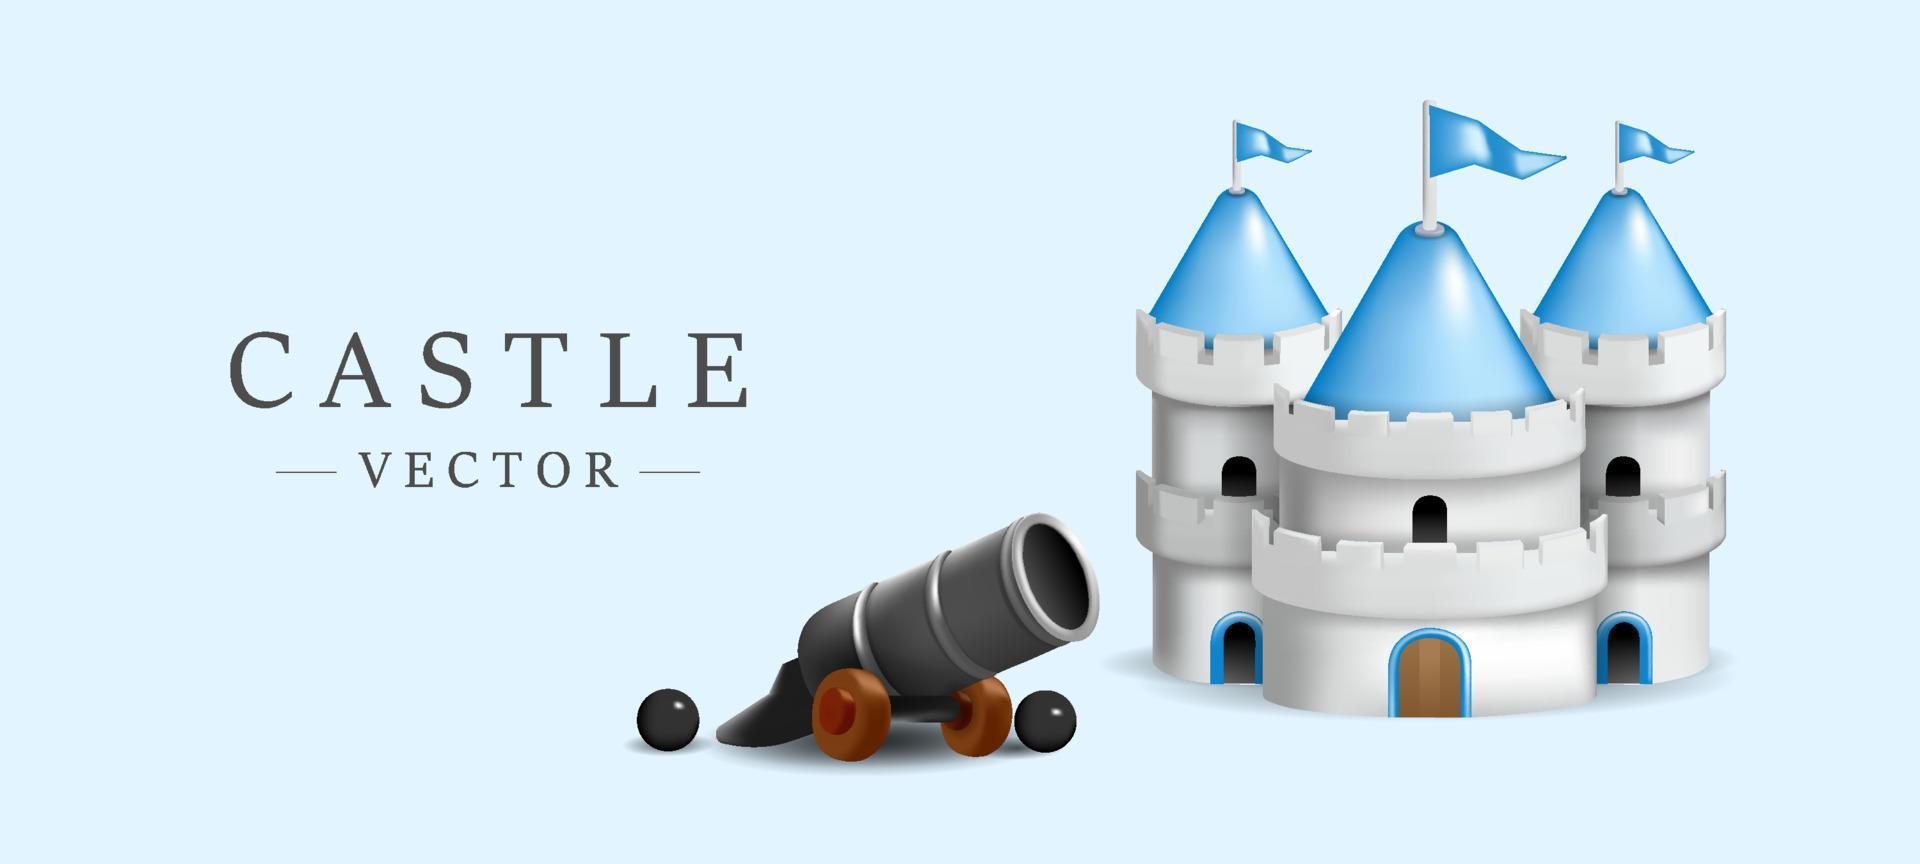 carino castello modello 3d con mini cannone illustrazione vettoriale su sfondo azzurro